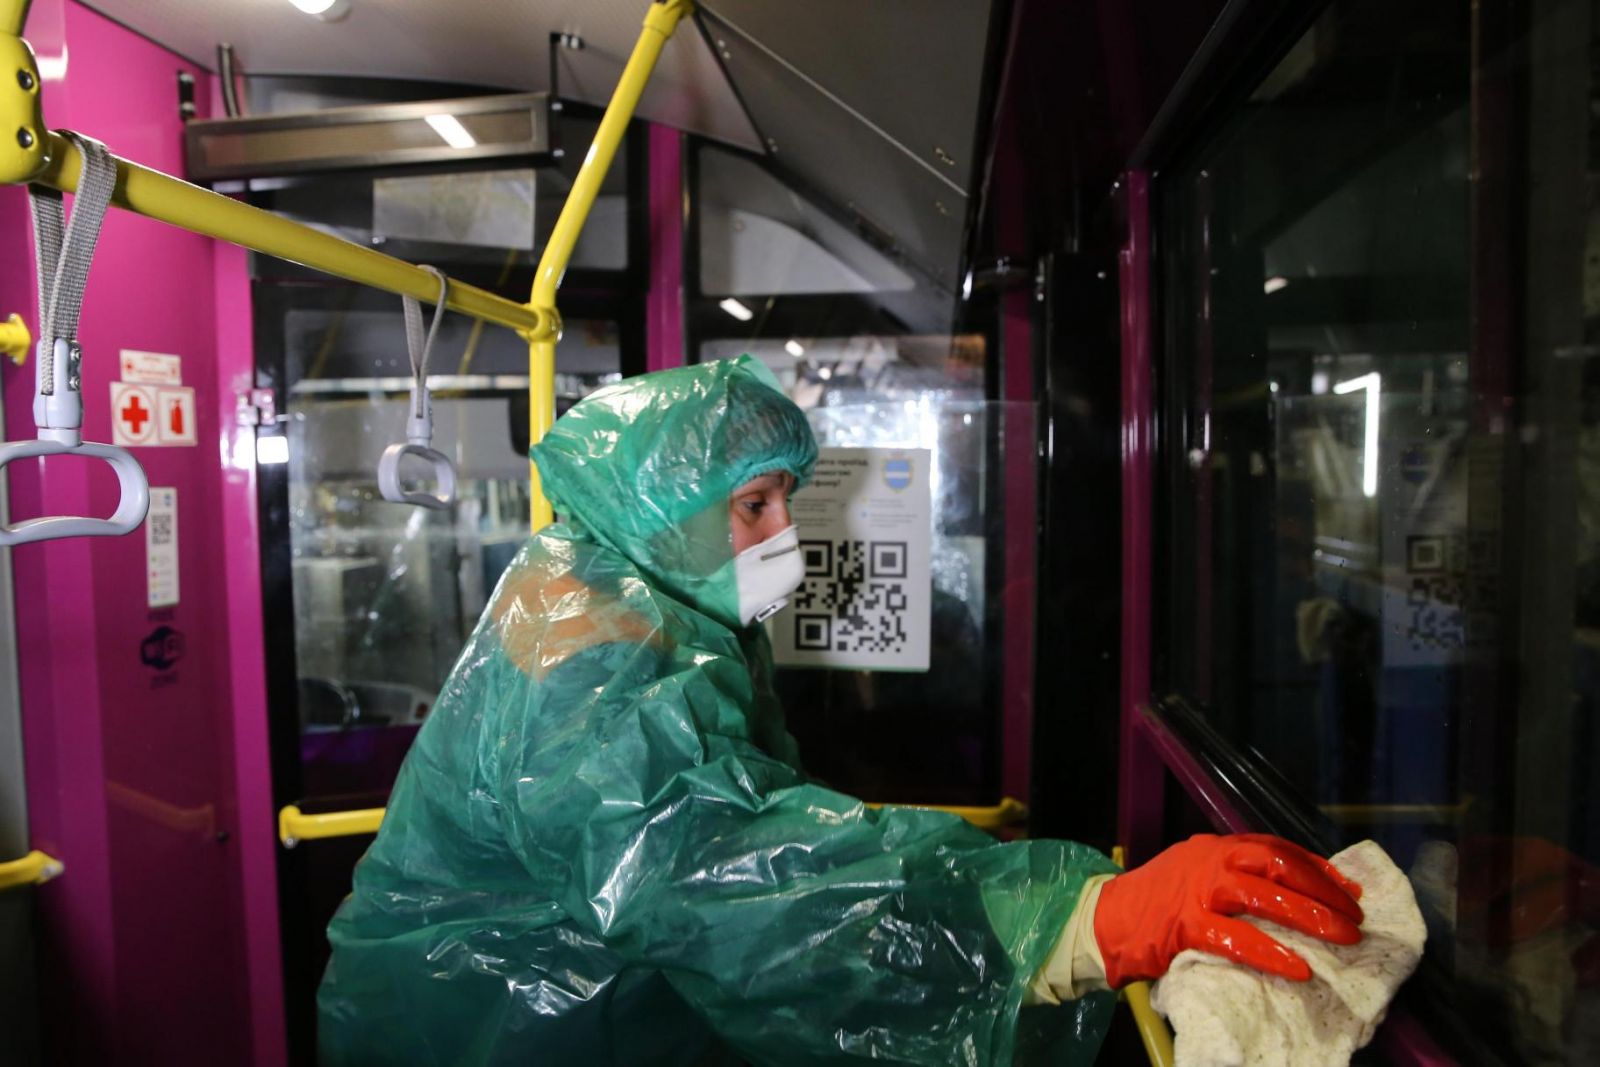 КП «Кременчугское троллейбусное управление» несколько раз в день проводит влажную уборку и дезинфекцию салонов троллейбусов